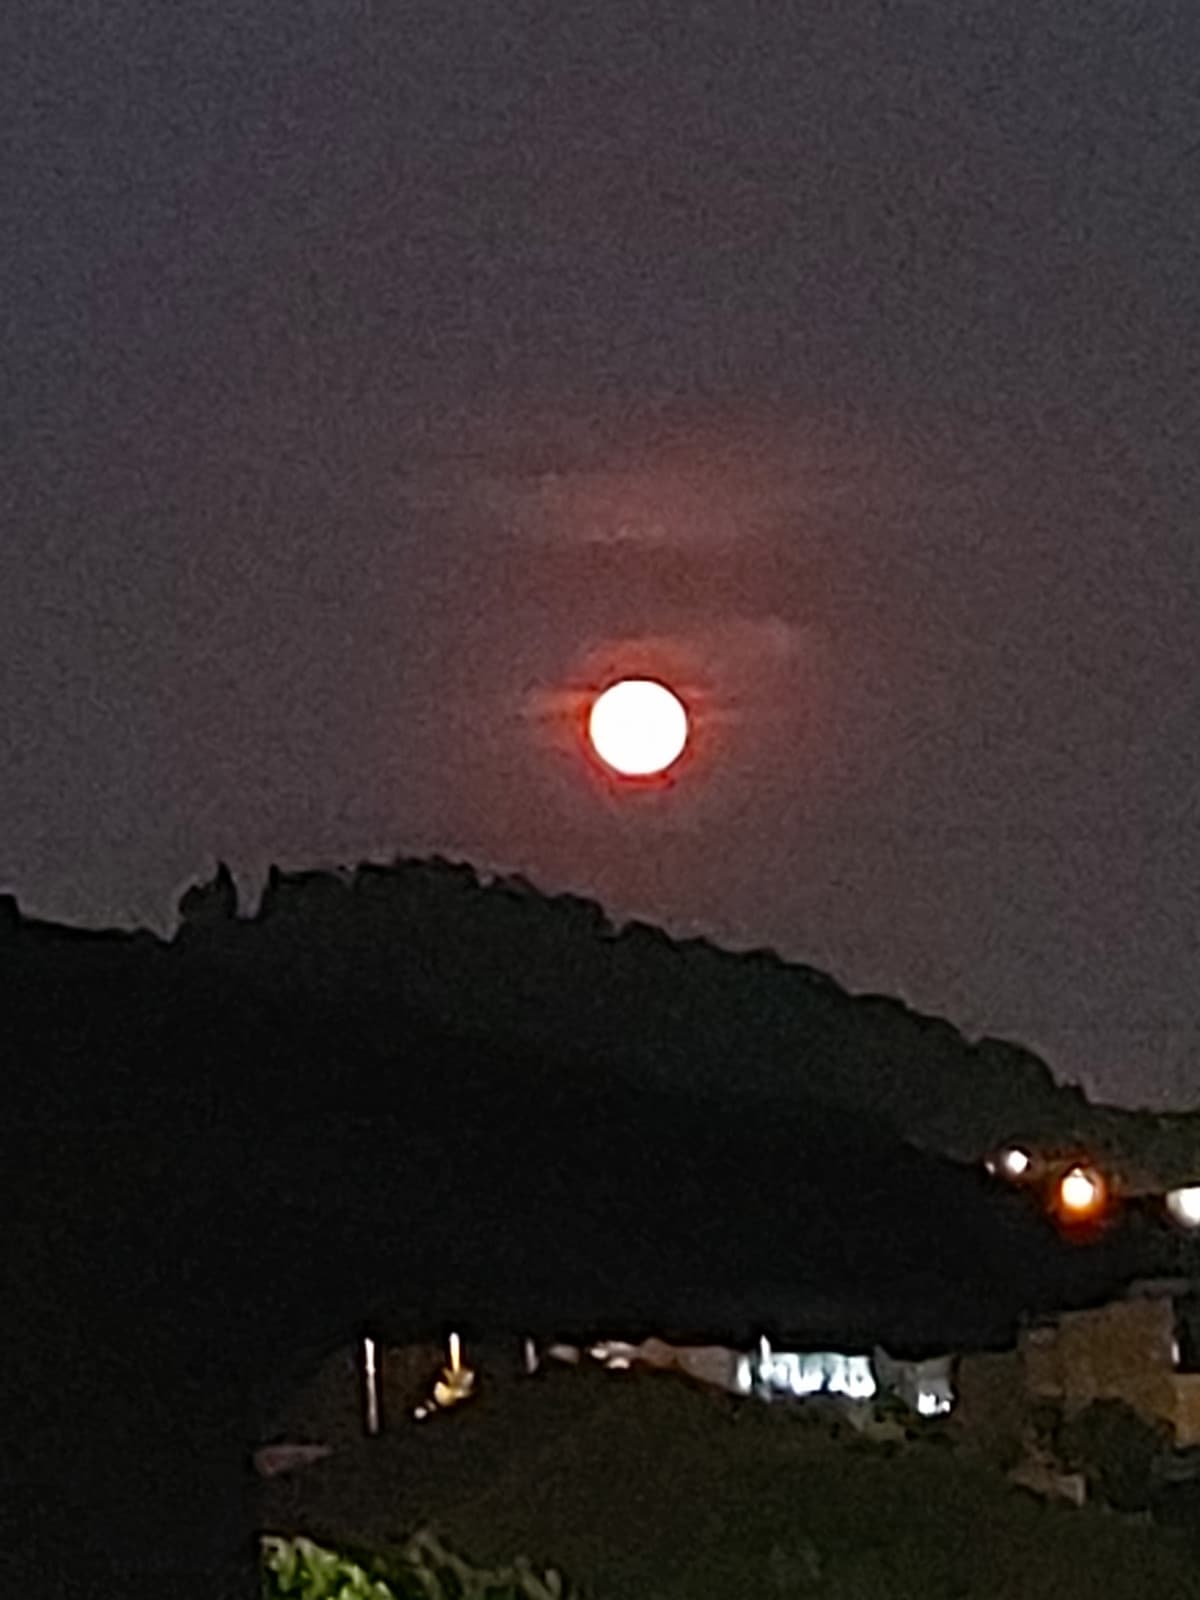 Raga pls uscite a guardare la luna perché è stupenda ♡?